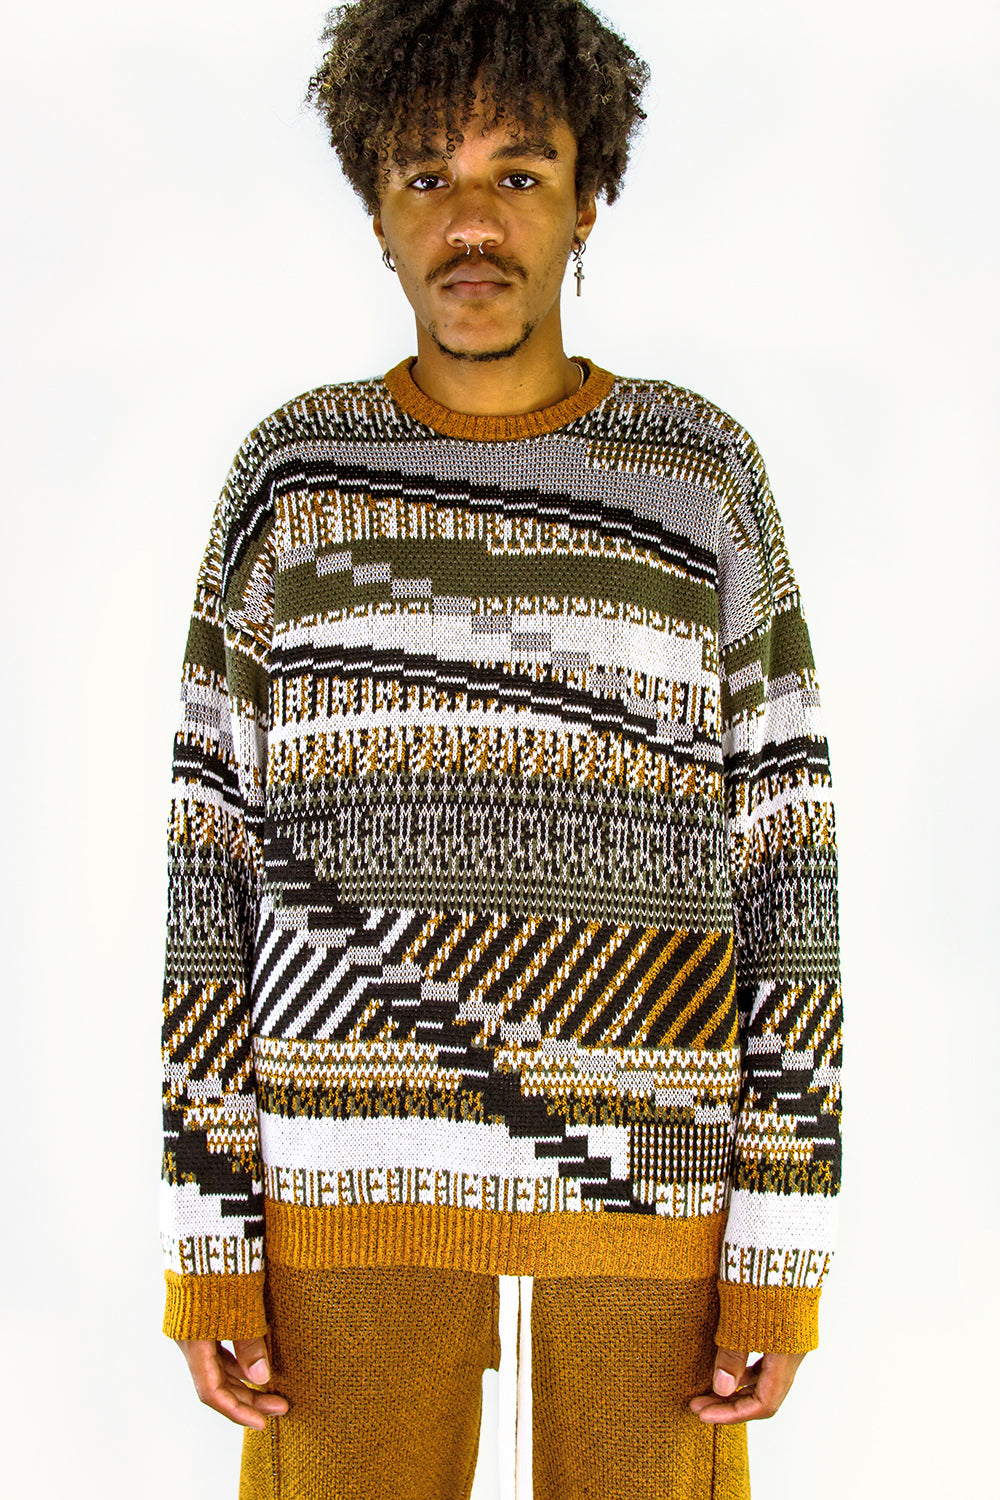 TKCXYY GLITCH-isle Tweed Pullover in Army – YanYan